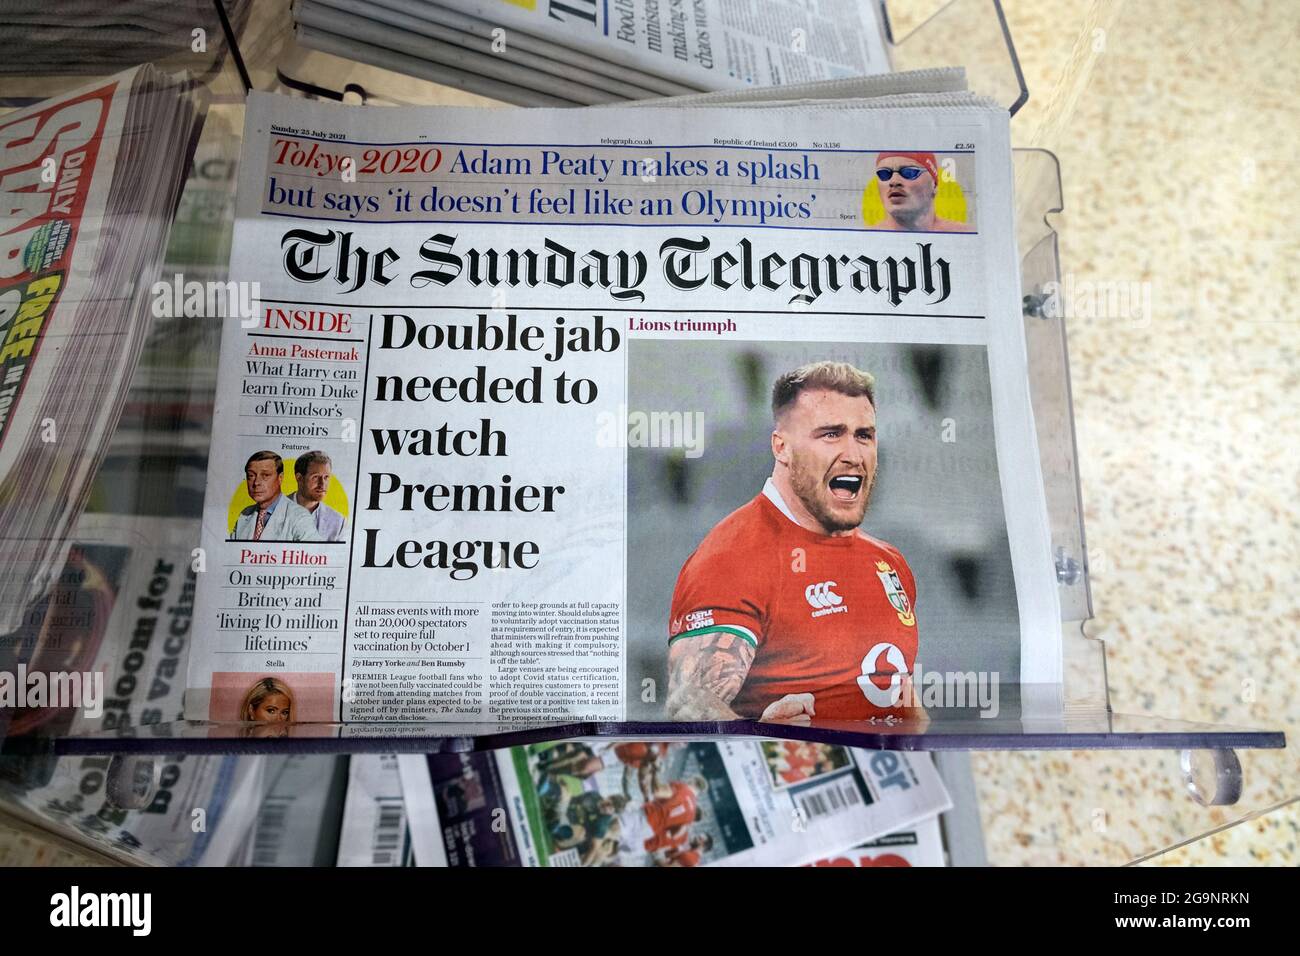 Supermarkt Zeitungskioster Sunday Telegraph Zeitung Schlagzeile 'Double Jab needed to watch Premier League' Fußball Titelseite London UK 25 July 2021 Stockfoto